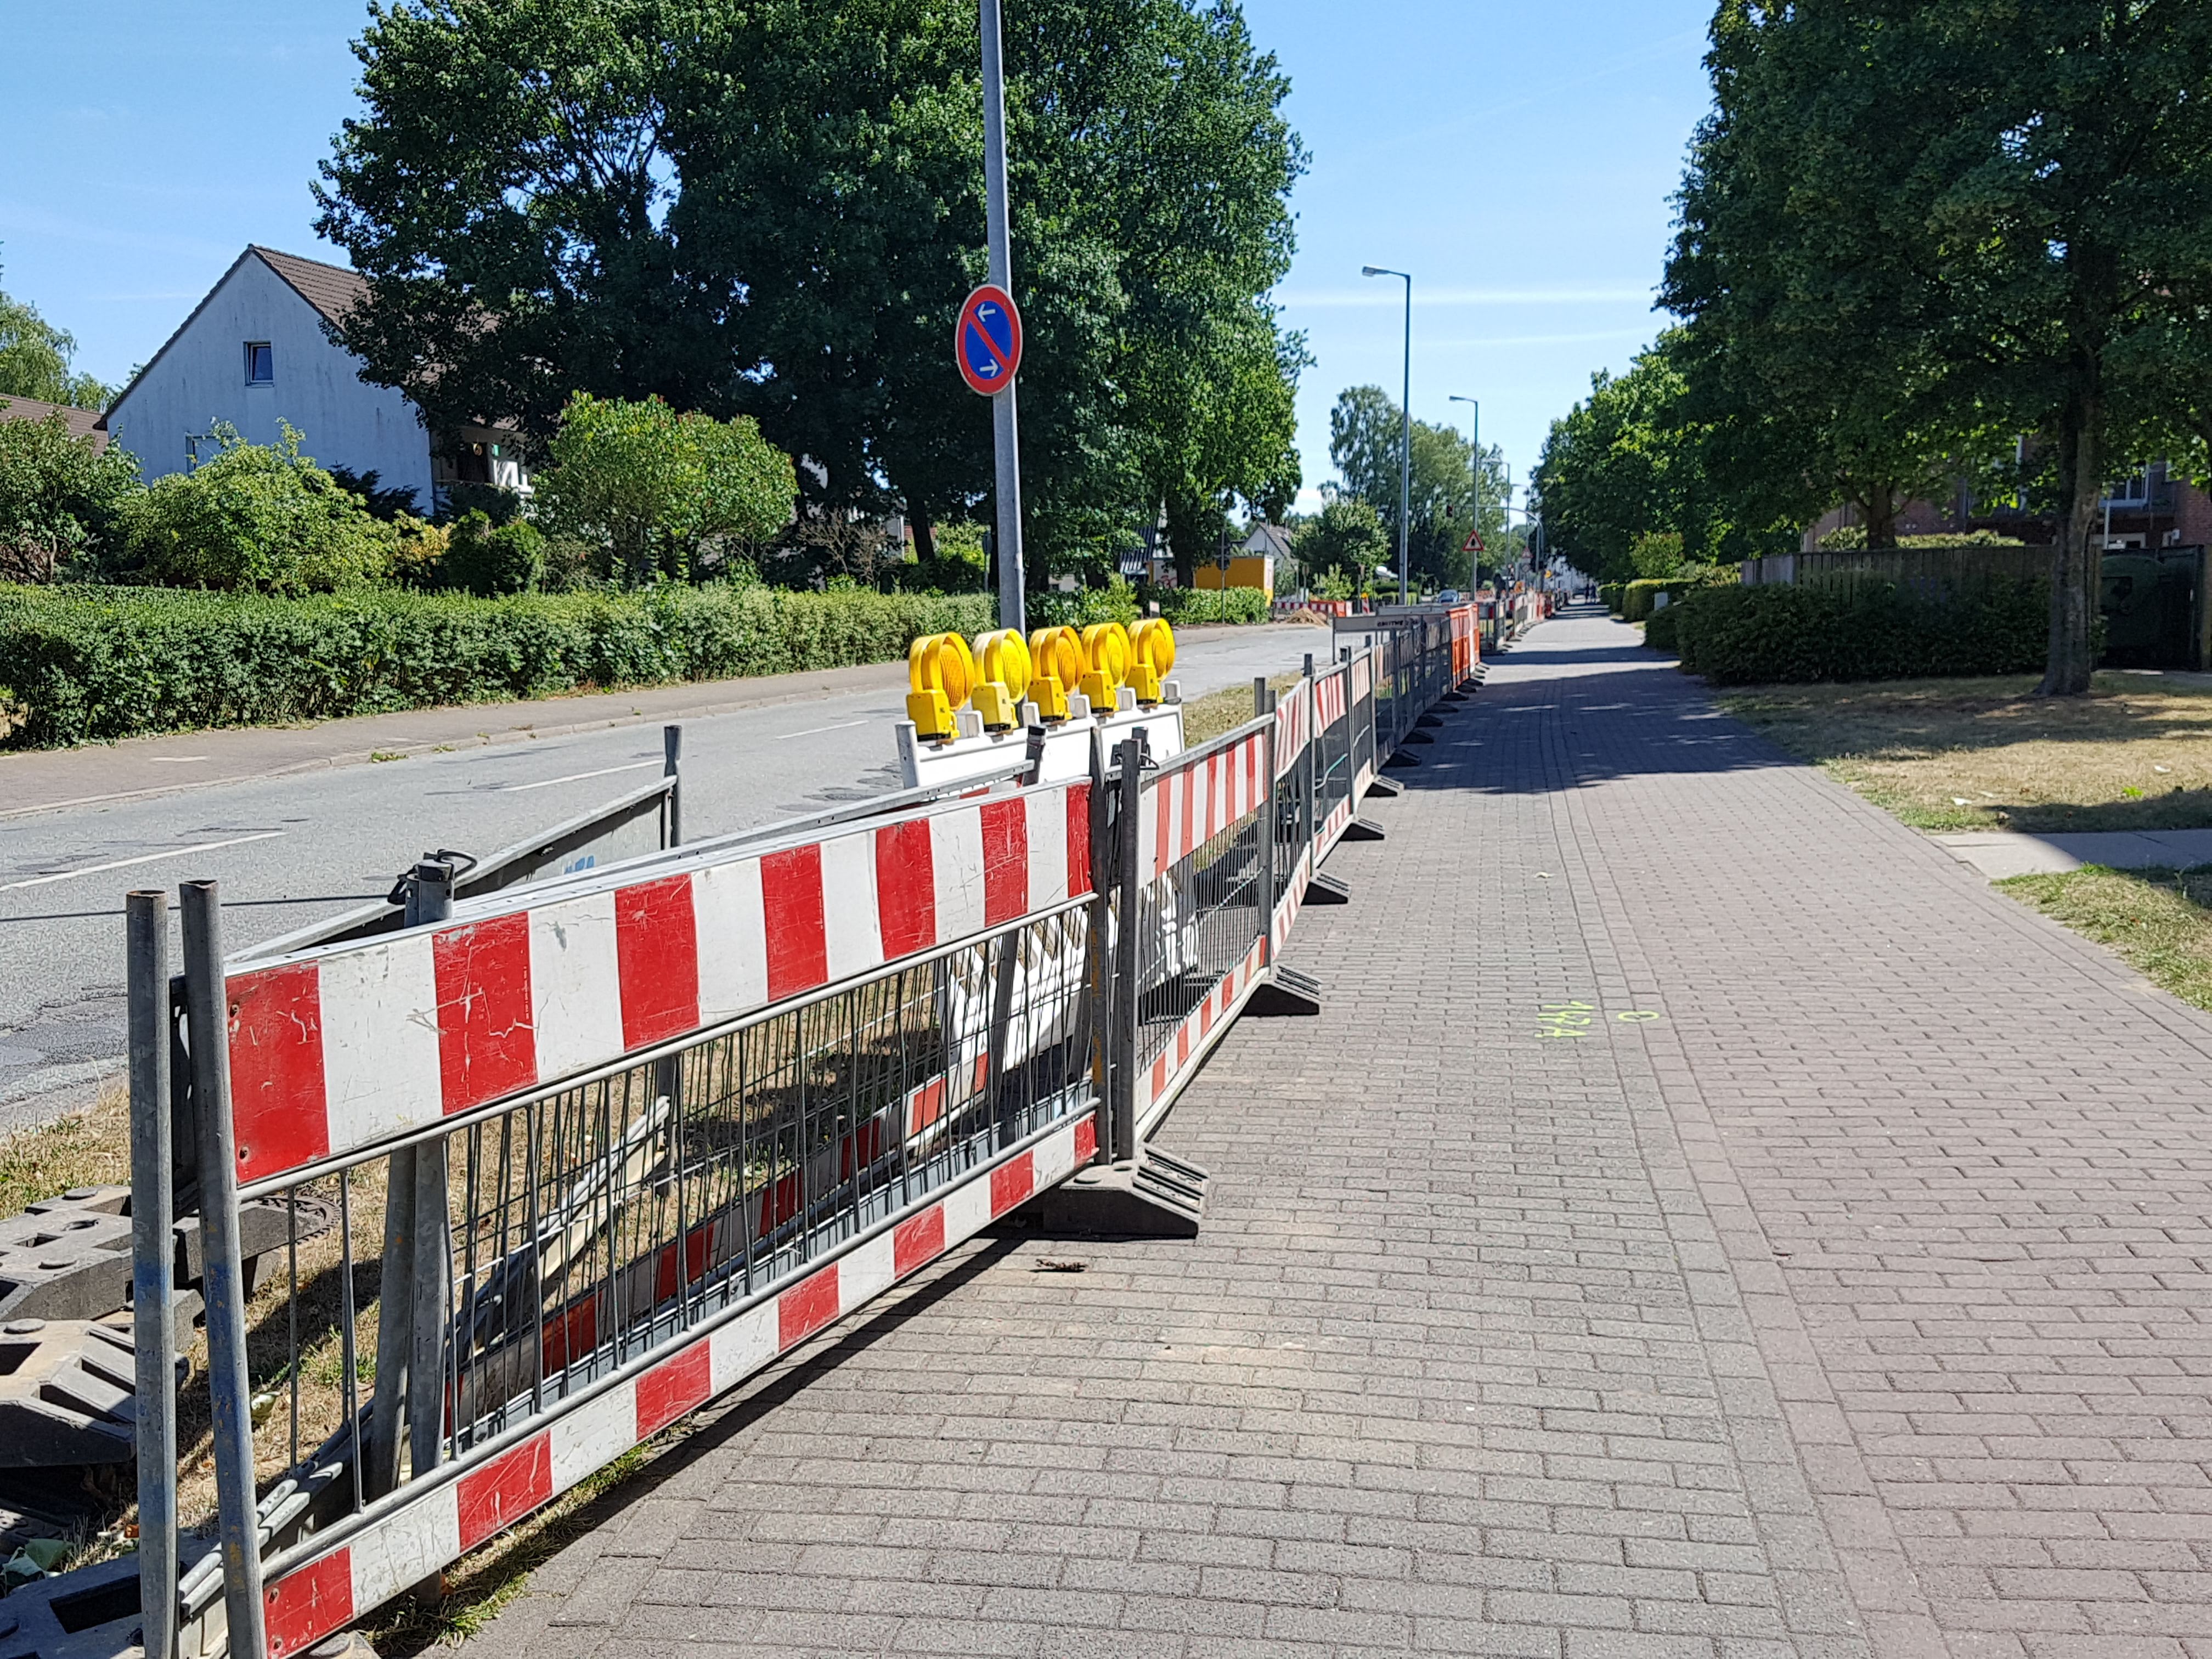 2018-07-07 Wahlstedt, Kronsheider Strasse (2)